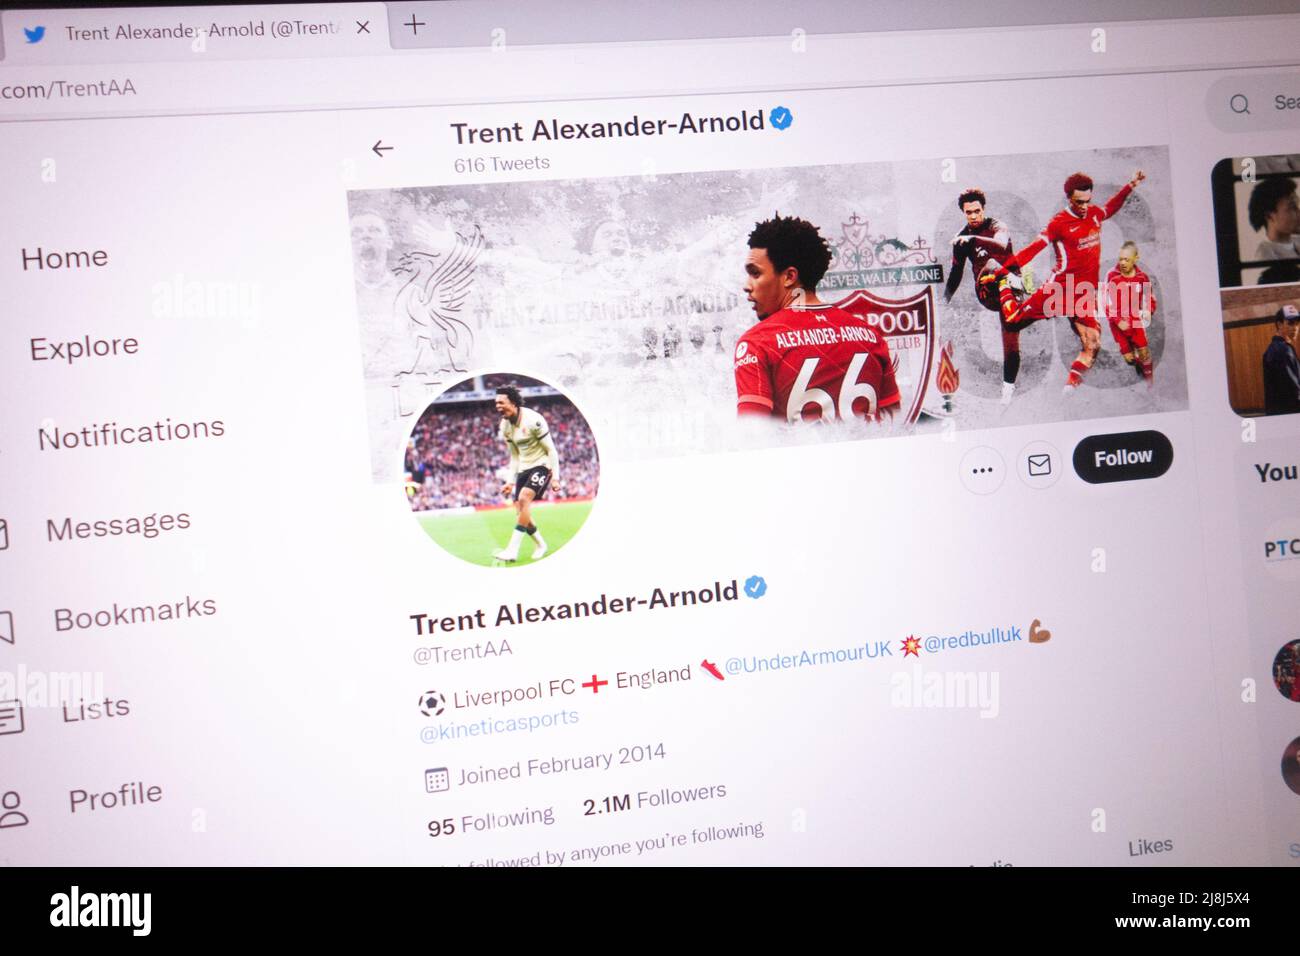 KONSKIE, POLOGNE - 14 mai 2022 : compte Twitter officiel Trent Alexander-Arnold affiché sur l'écran d'un ordinateur portable Banque D'Images